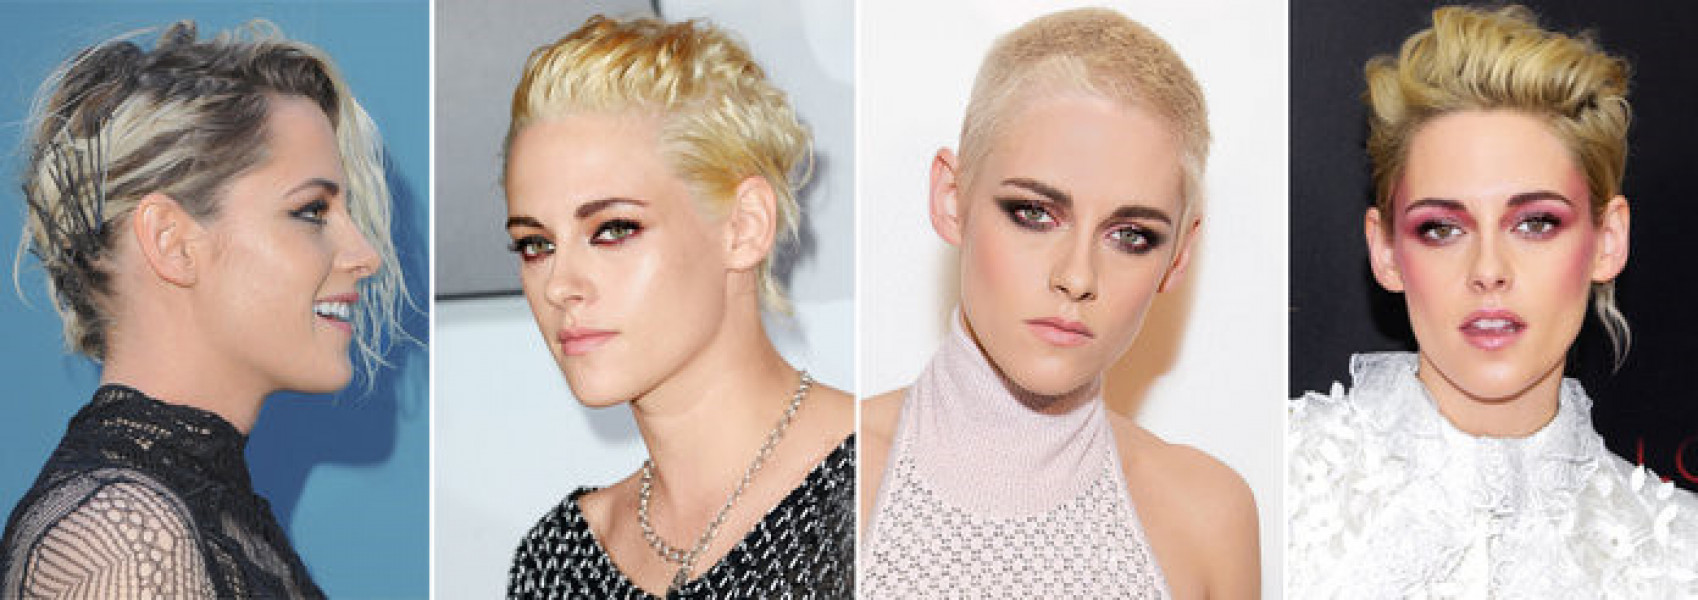 Kristen Stewart cũng gây bất ngờ với kiểu tóc quá táo bạo. Nữ diễn viên 26 tuổi đã cạo bỏ mái tóc dài và nhuộm màu vàng bạch kim.